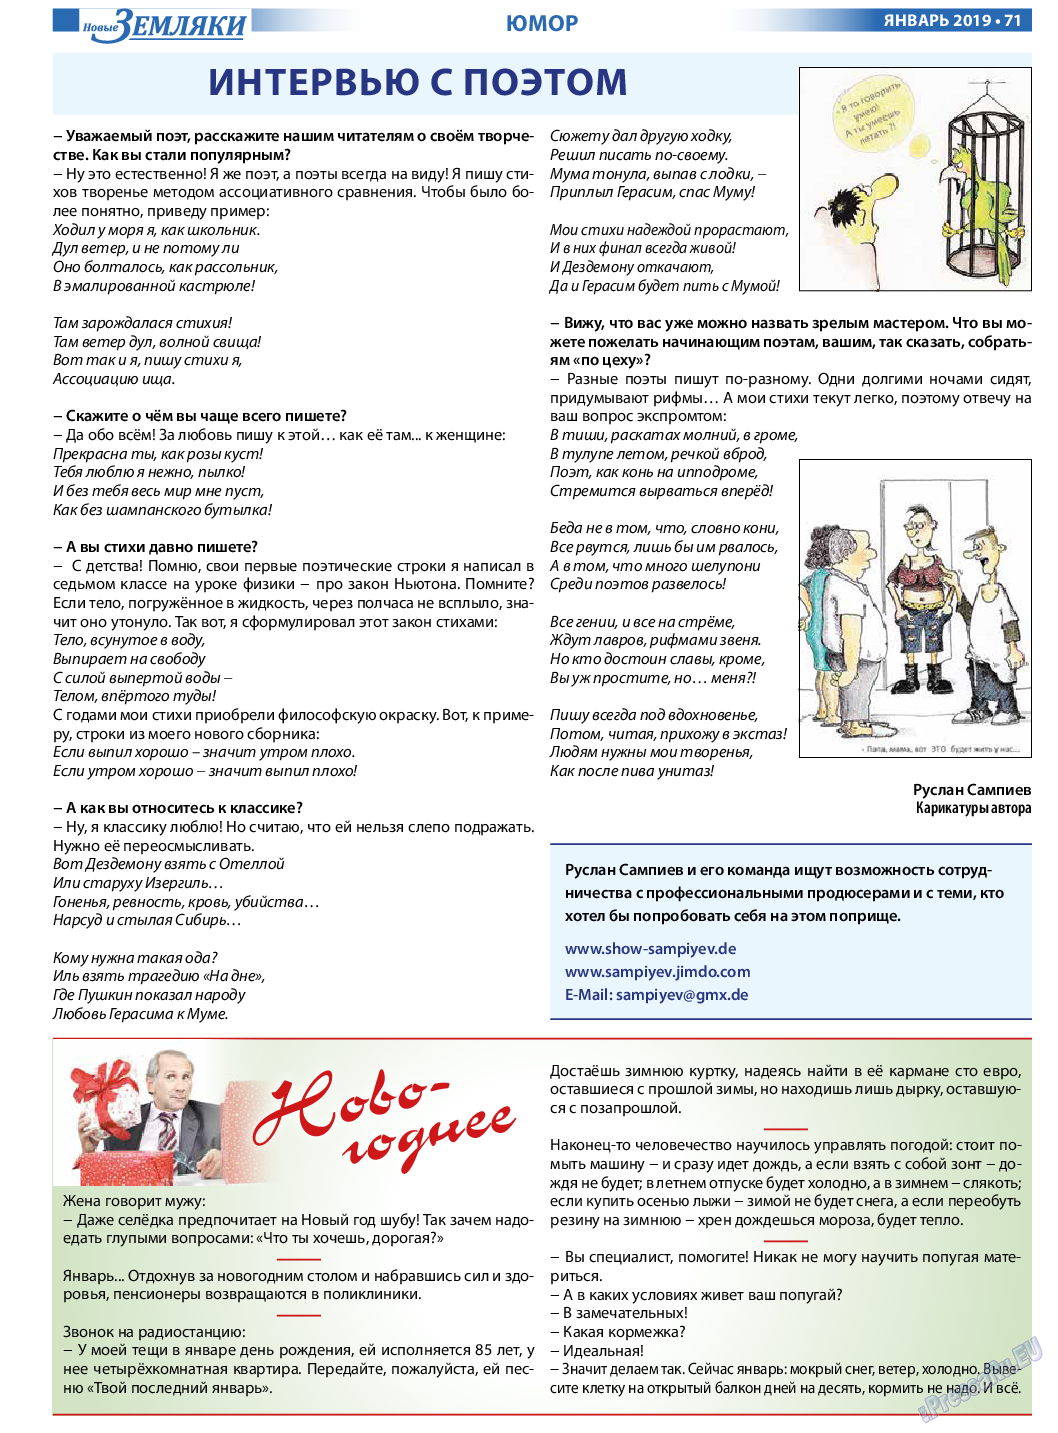 Новые Земляки, газета. 2019 №1 стр.71